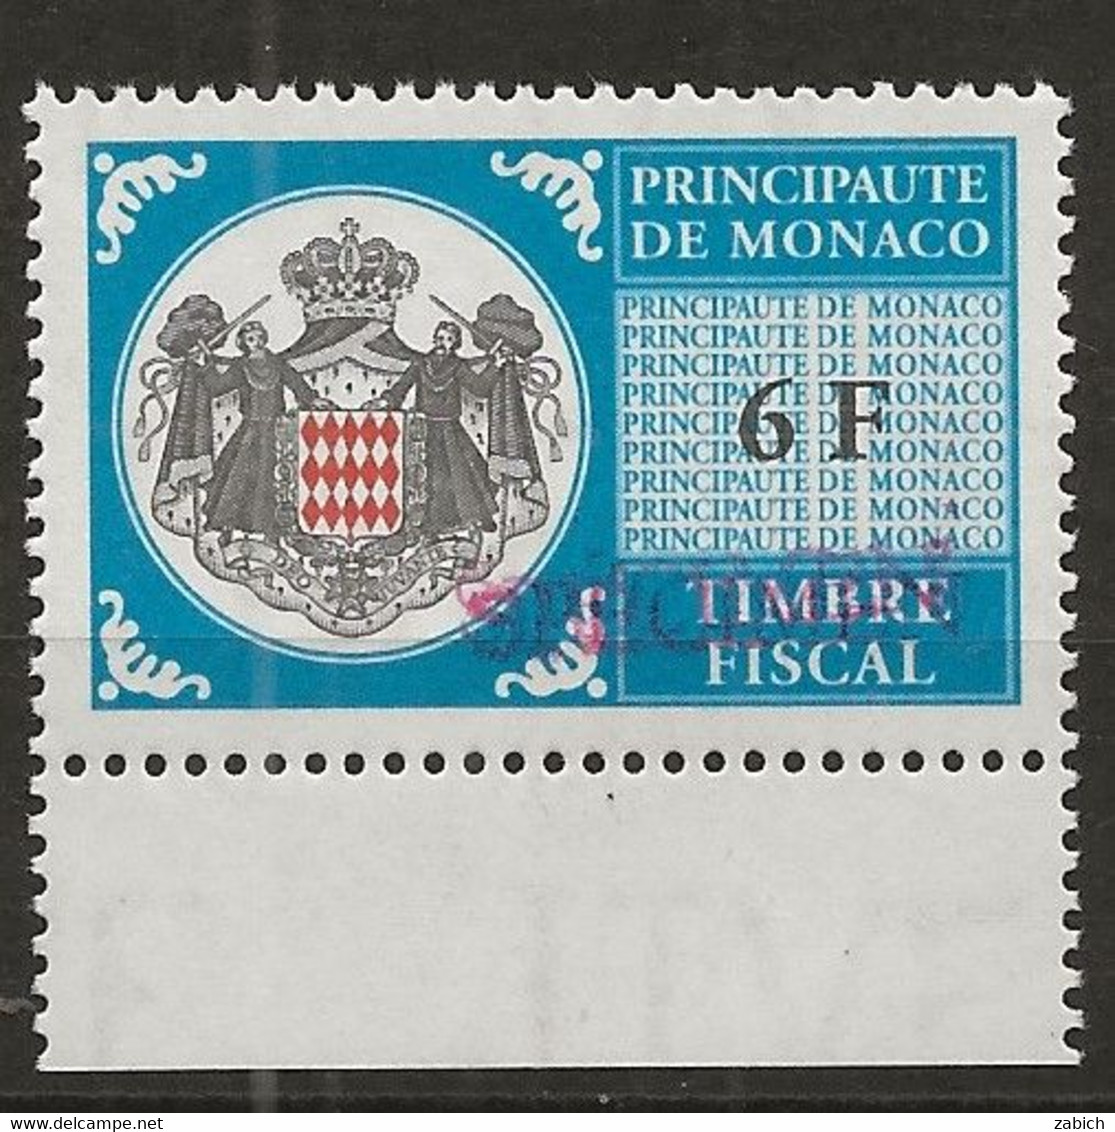 TIMBRES FISCAUX DE MONACO SERIE UNIFIEE N° 101 6F Bleu Rare Surchargé Specimen Neuf Gomme Mnh (**) - Fiscaux